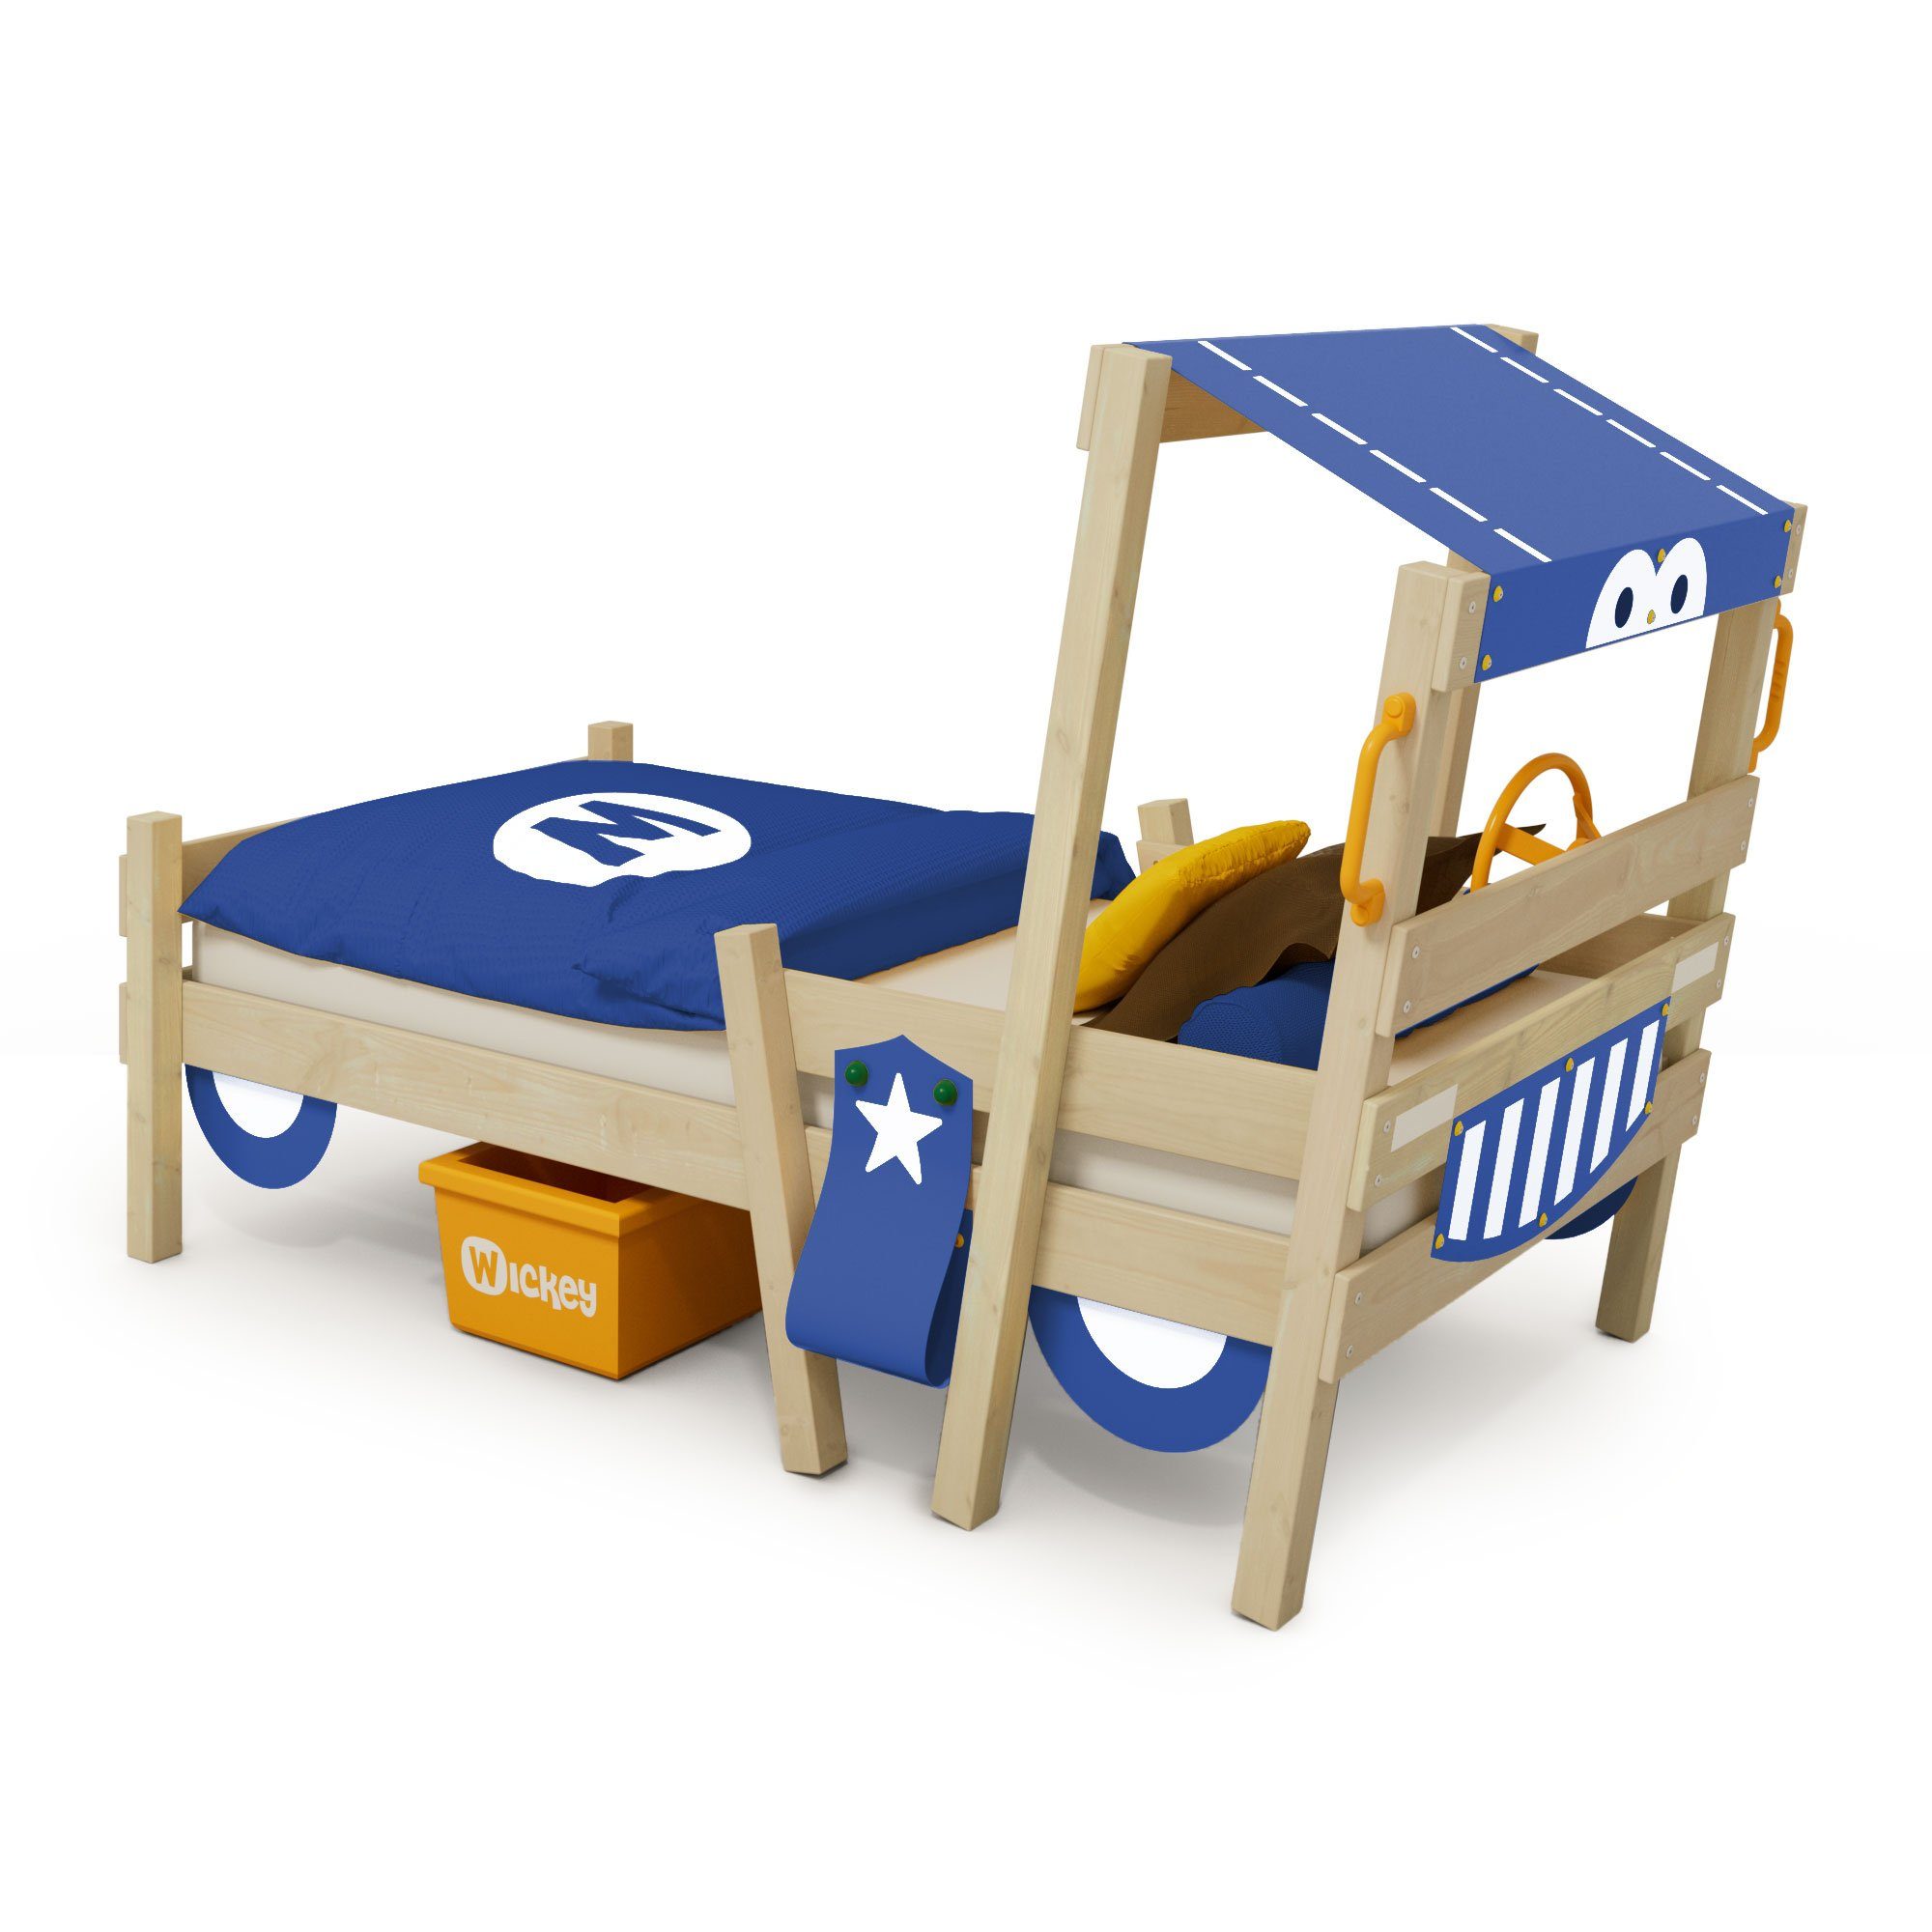 Wickey Kinderbett Crazy Sparky Fun - Spielbett, Holzbett 90 x 200 cm (Holzpaket aus Pfosten und Brettern, Spielbett für Kinder), Massivholzbett blau